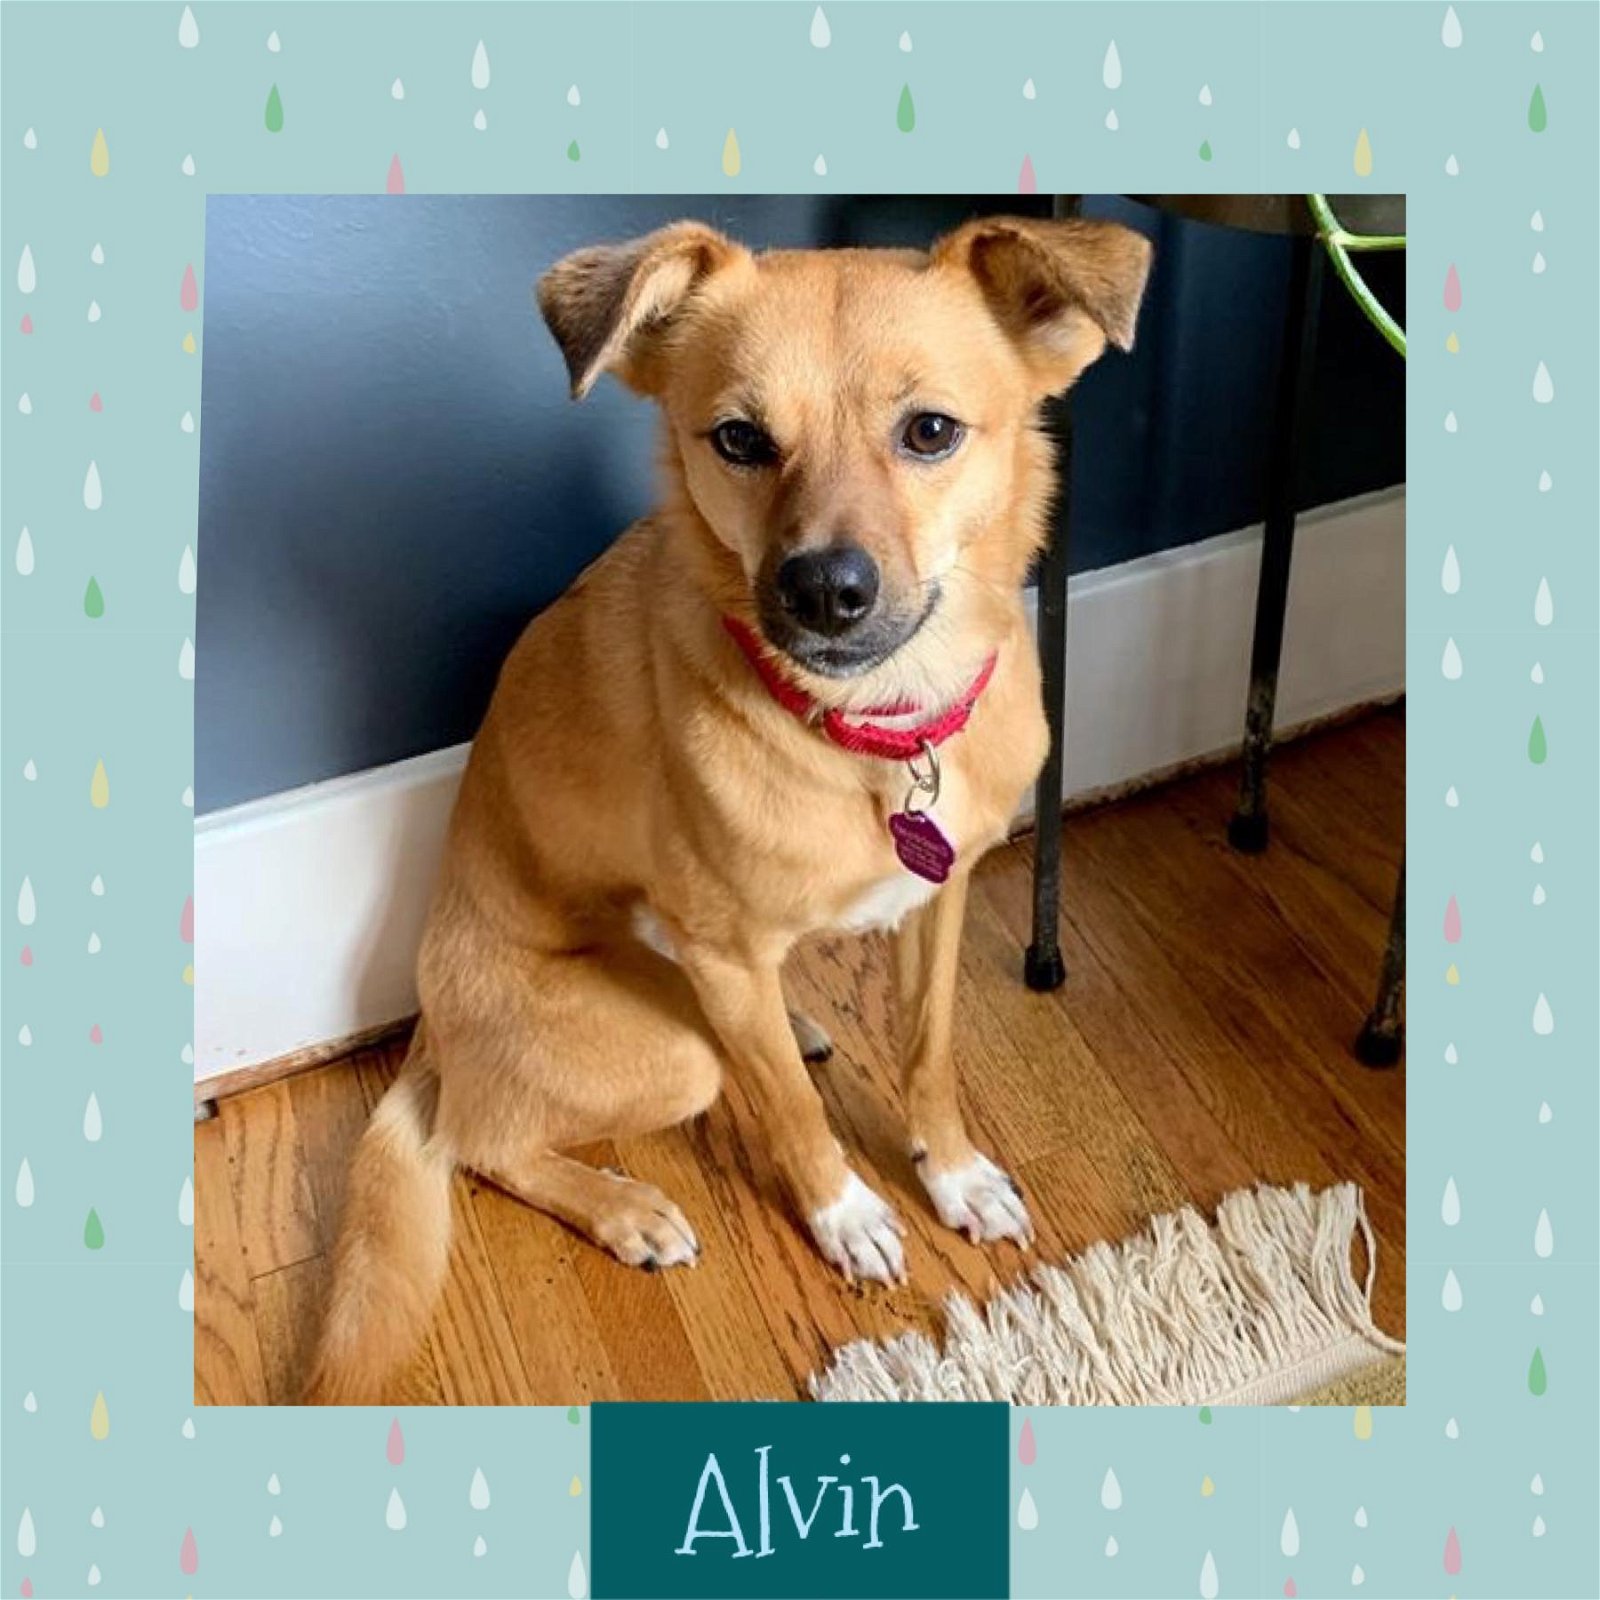 adoptable Dog in Littleton, CO named Alvin